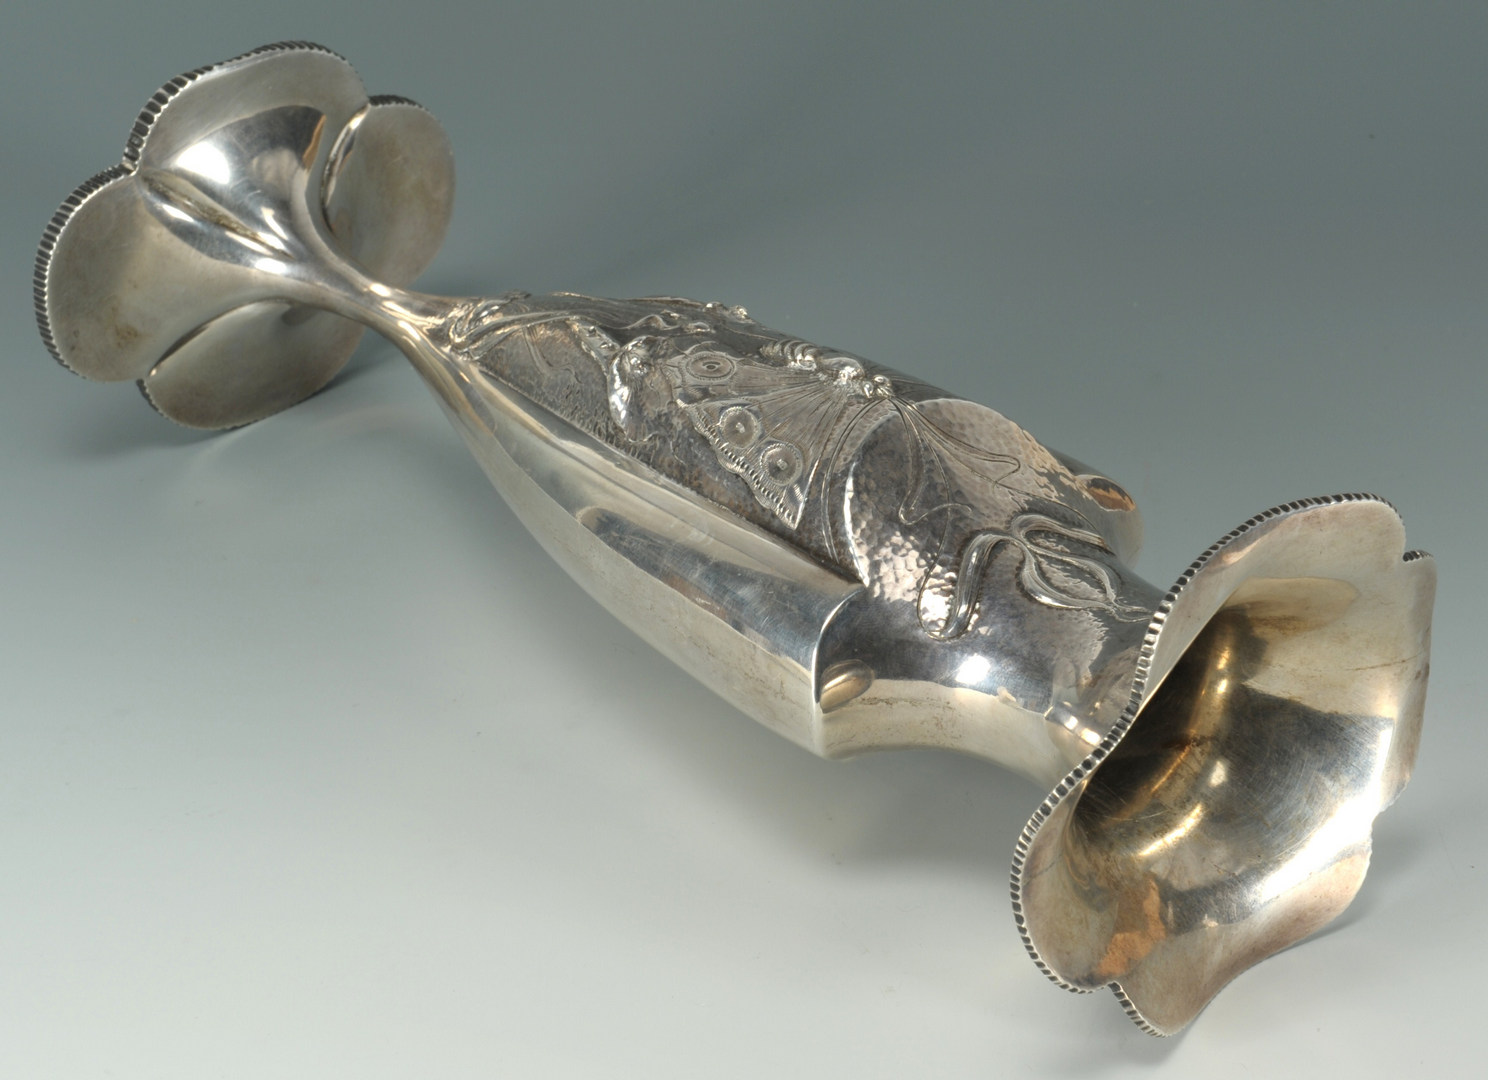 Lot 440: Art Nouveau Sterling Silver Vase, 11-1/2" H